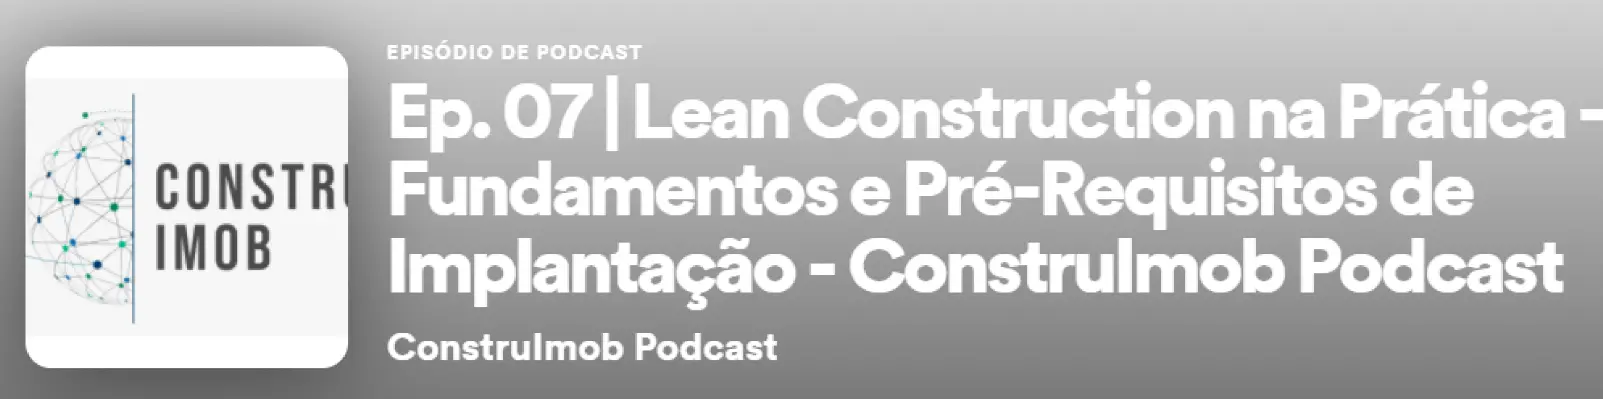 Ep. 07 | Lean Construction na Prática - Fundamentos e Pré-Requisitos de Implantação 